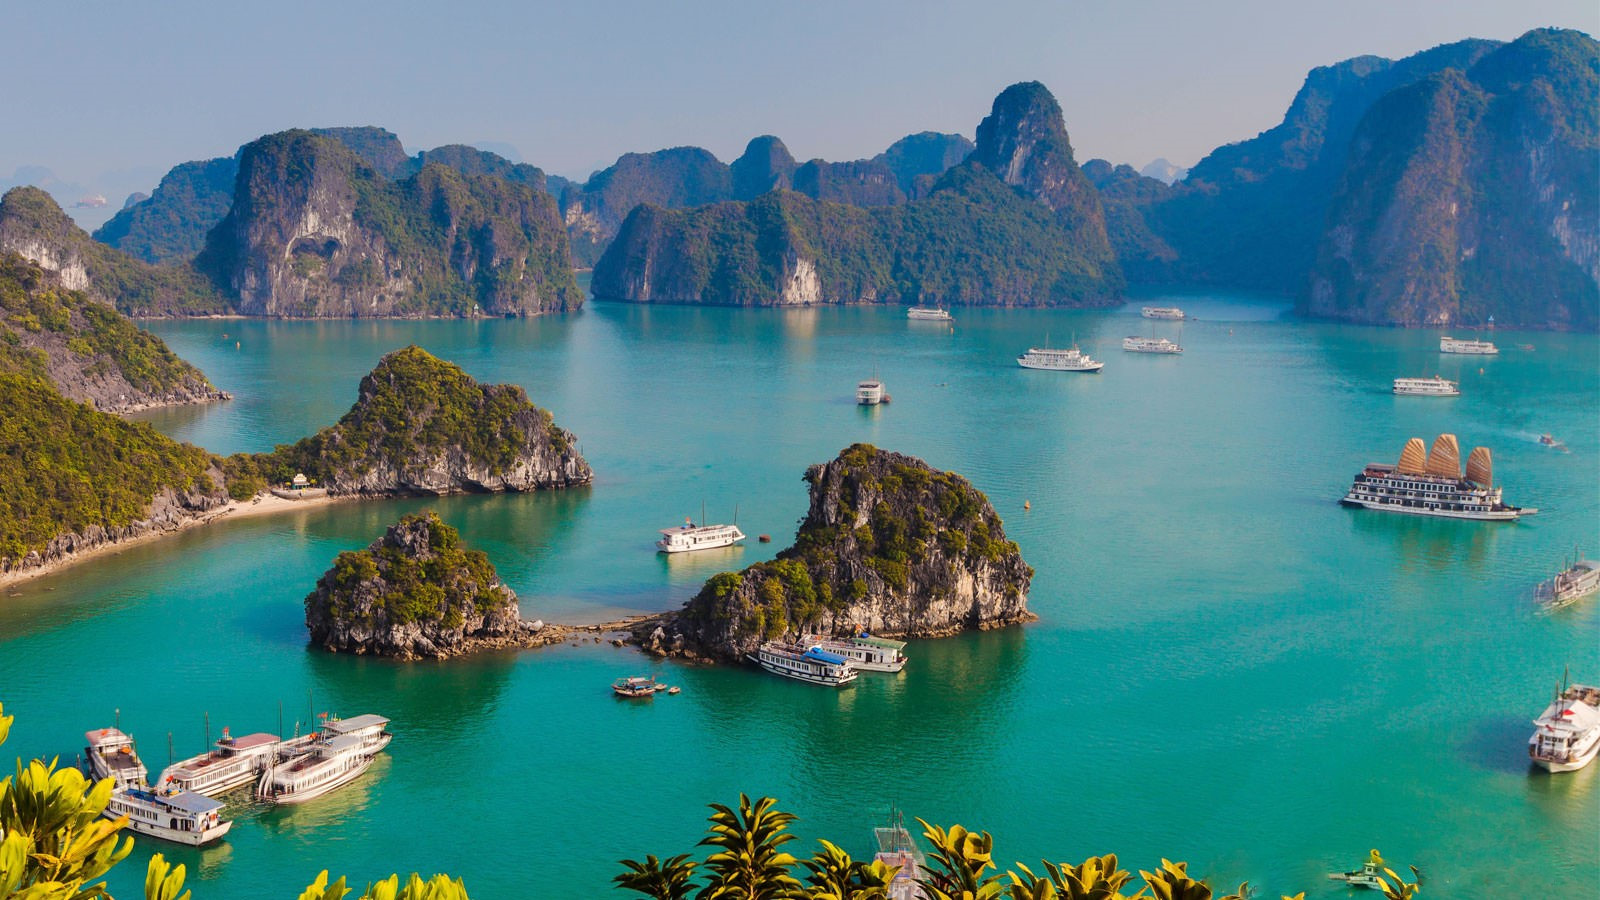 Nhờ phần mềm AI lập kế hoạch du lịch Việt Nam, nữ du khách nhận được cái kết vượt sức tưởng tượng - Ảnh 9.